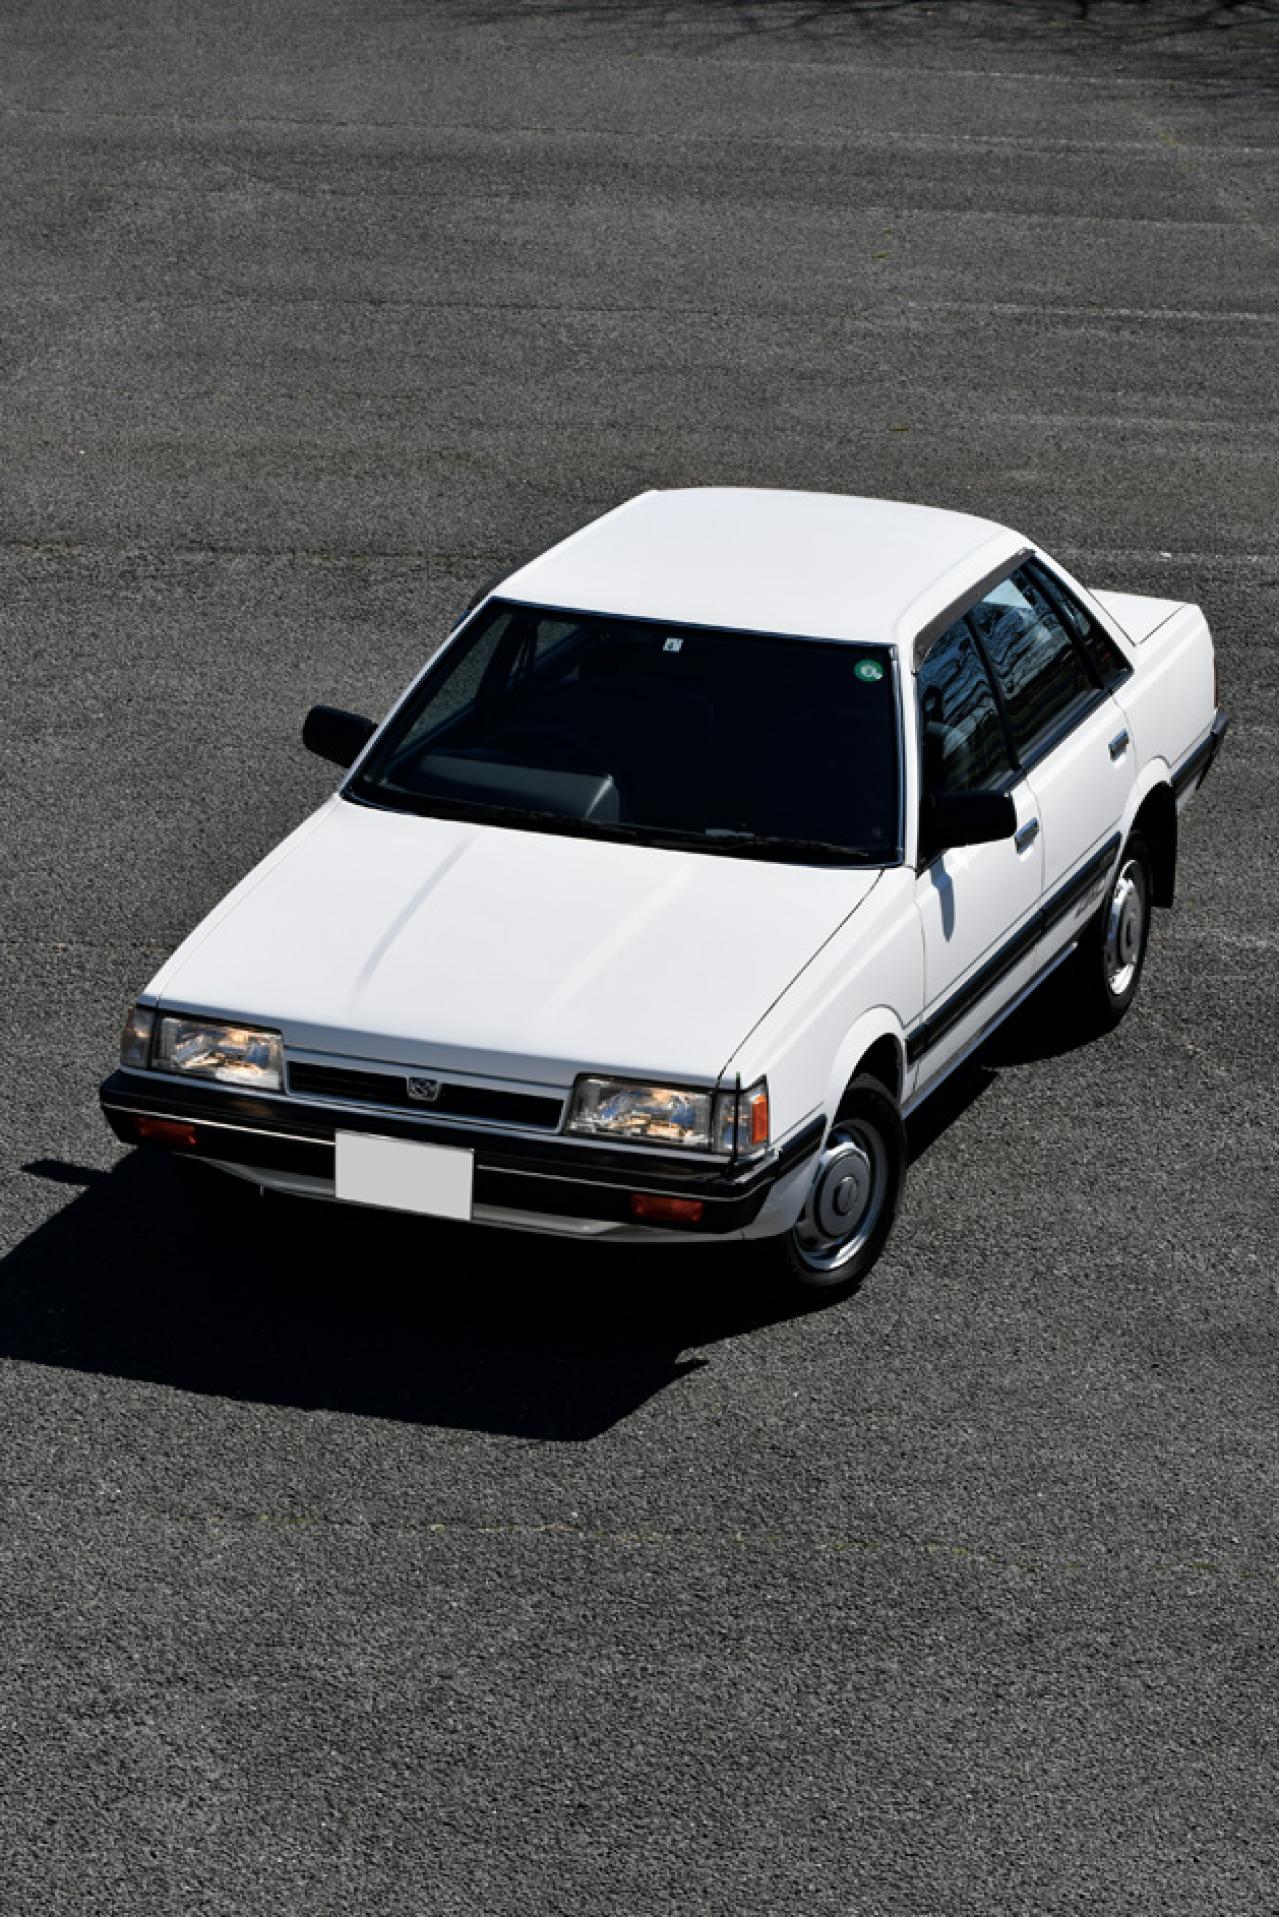 80年代車再発見 スバル レオーネ4wd 1987年 偉大な技術だった名車に乗りたい Subaru Leone 4wd 4doorsedan 1 6lf Motor Fan モーターファン